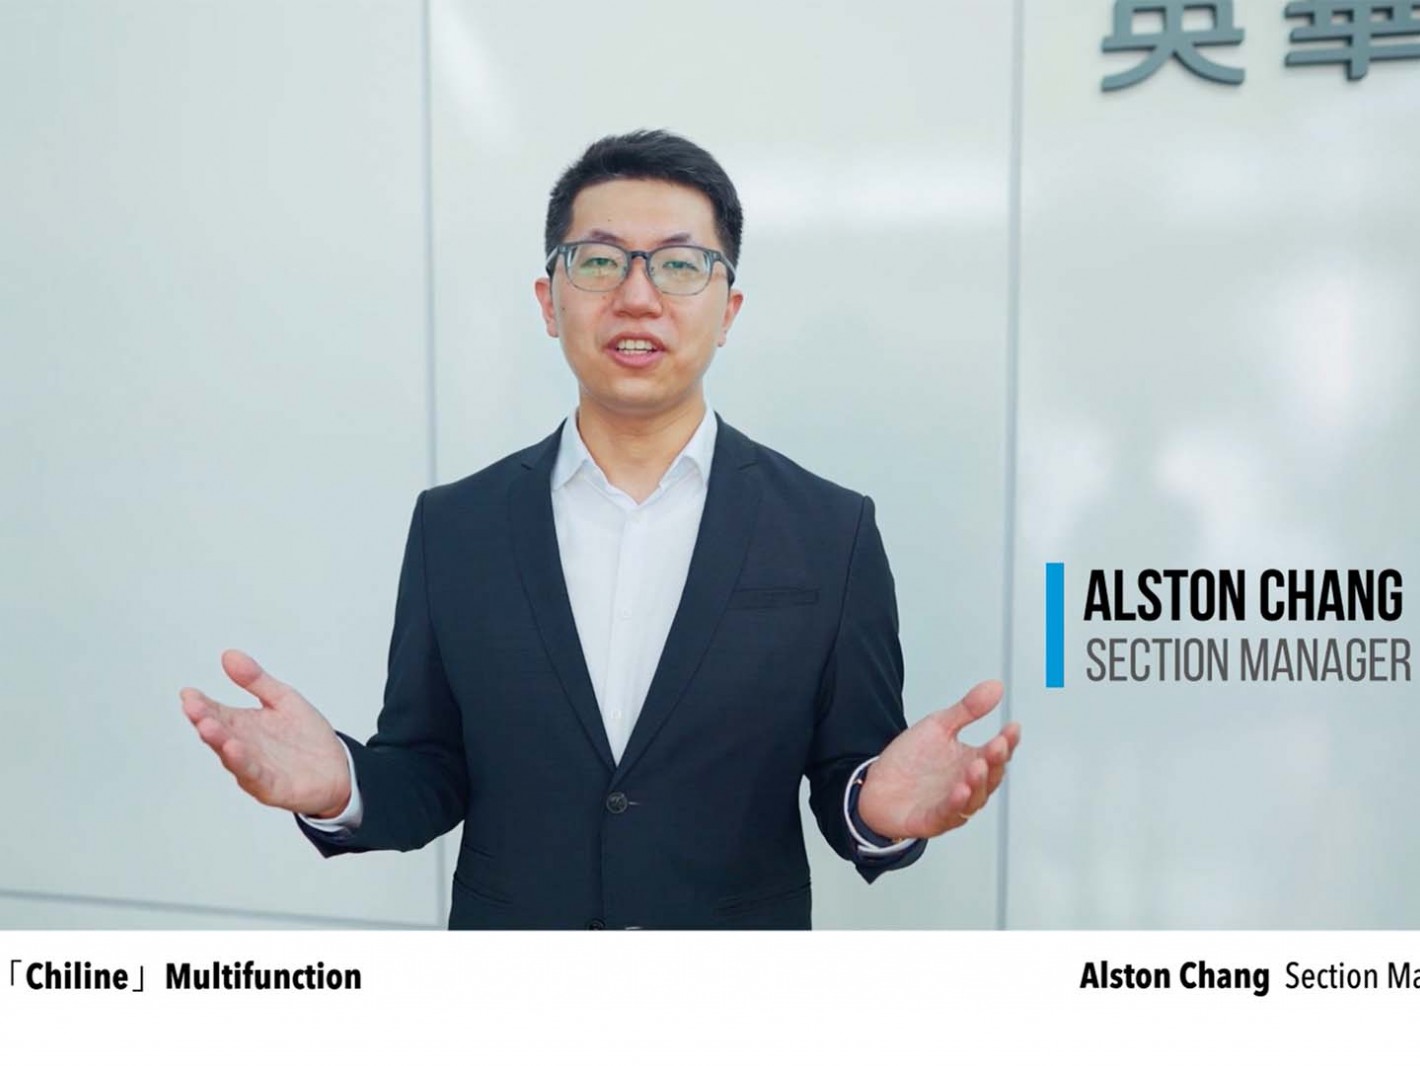 英華達股份有限公司張育榮 Alston Chang資深專員介紹「全家寶」全方位生理量測系統